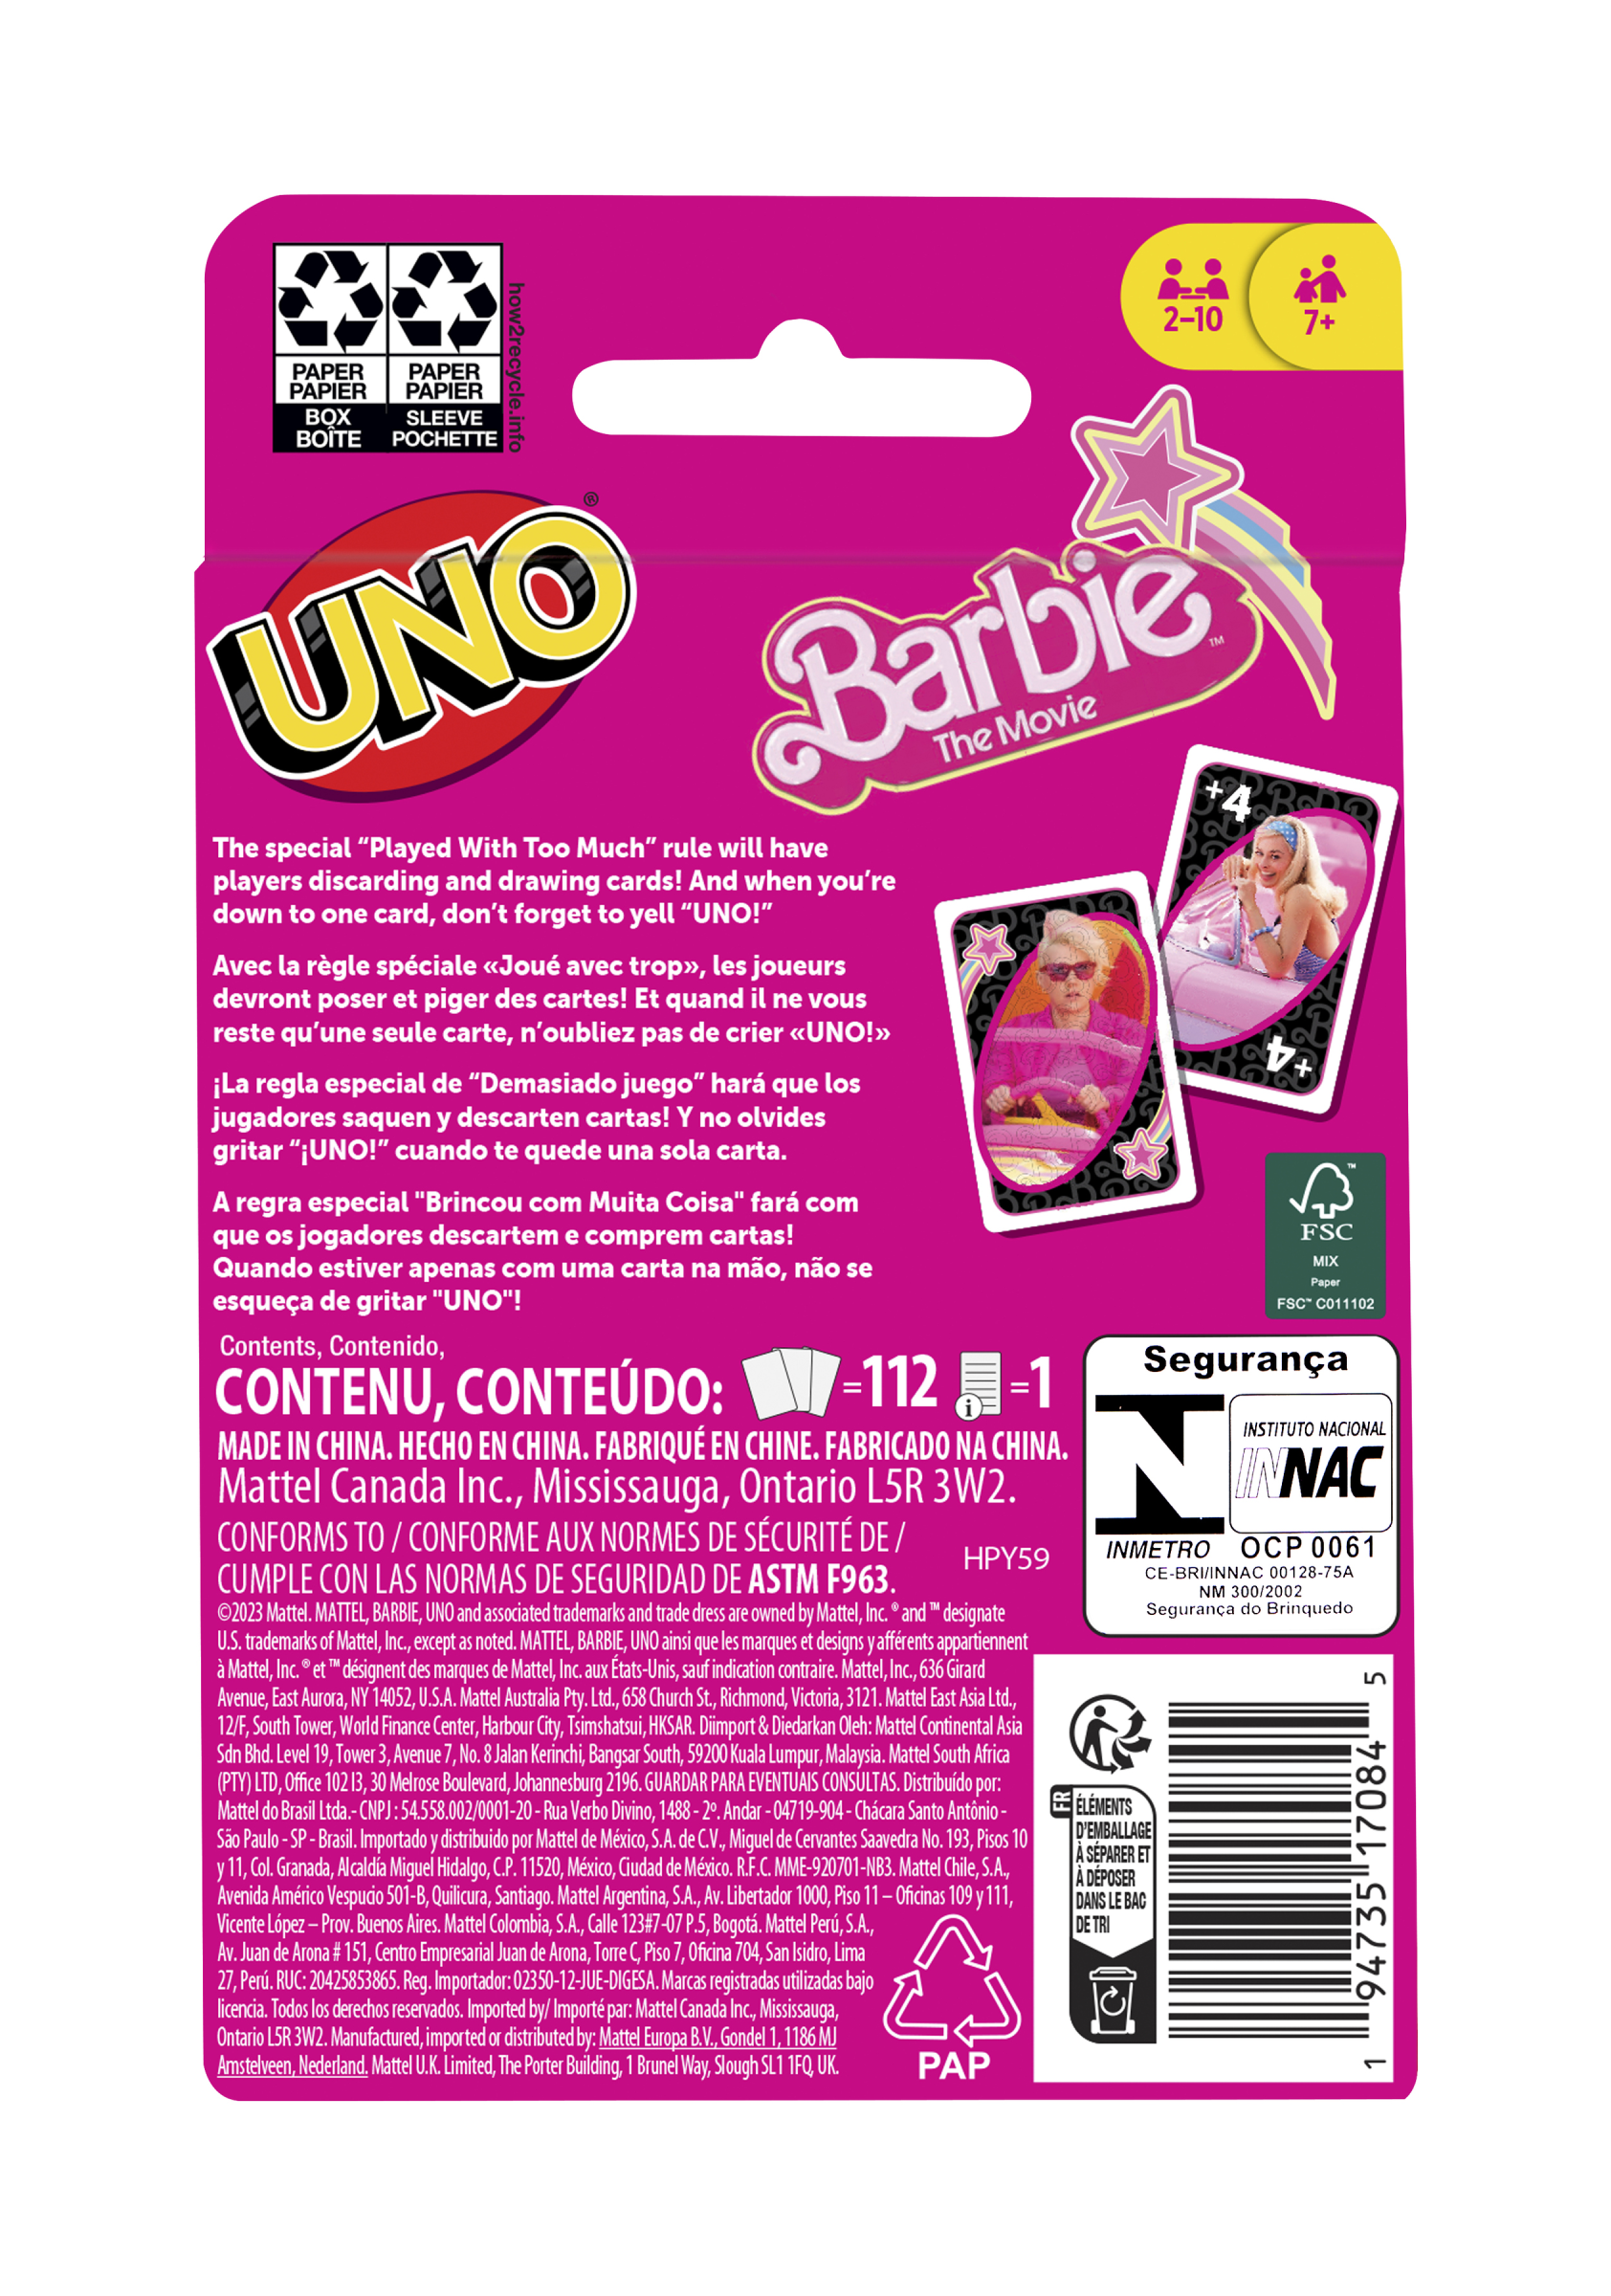 Uno barbie the movie - gioco di carte uno ispirato al film di barbie, per serate di gioco in famiglia e feste tra amici, 7+ anni, hpy59 - UNO